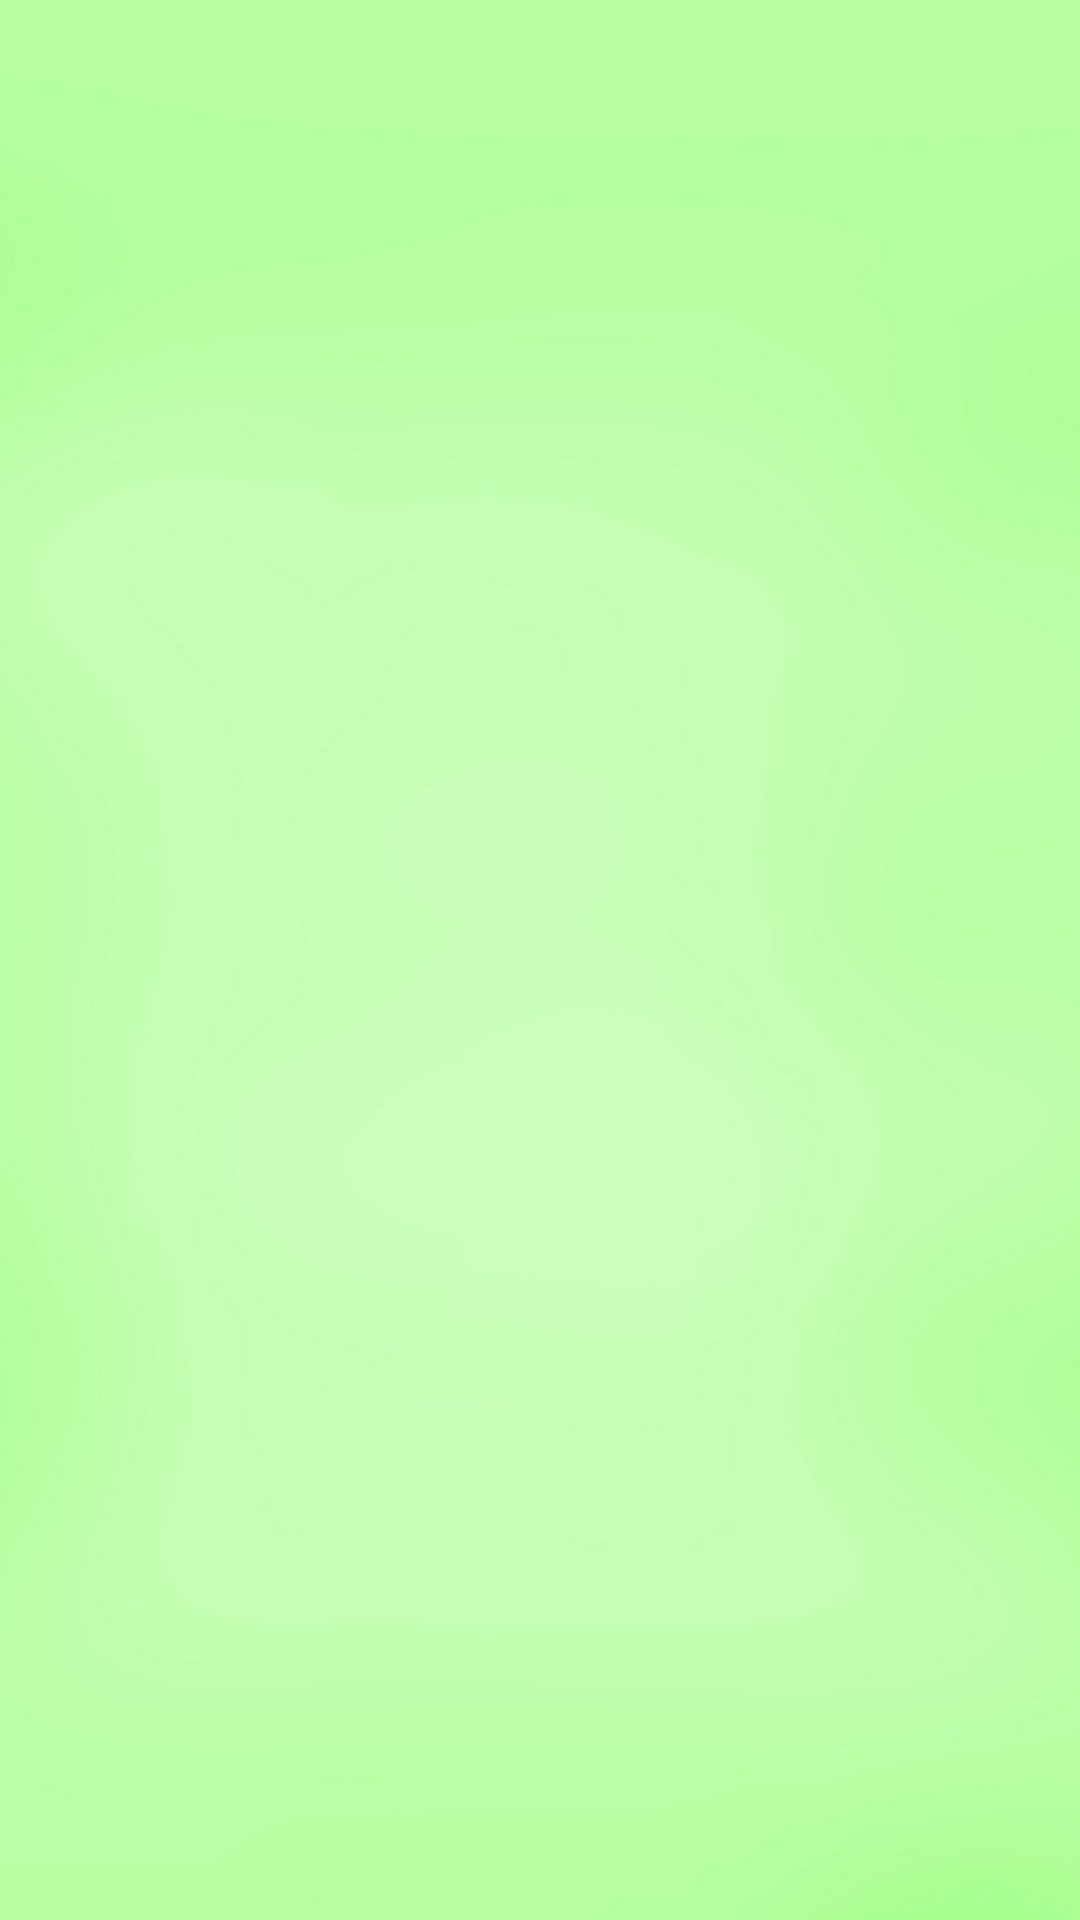 carta da parati verde chiaro,verde,giallo,acqua,turchese,erba